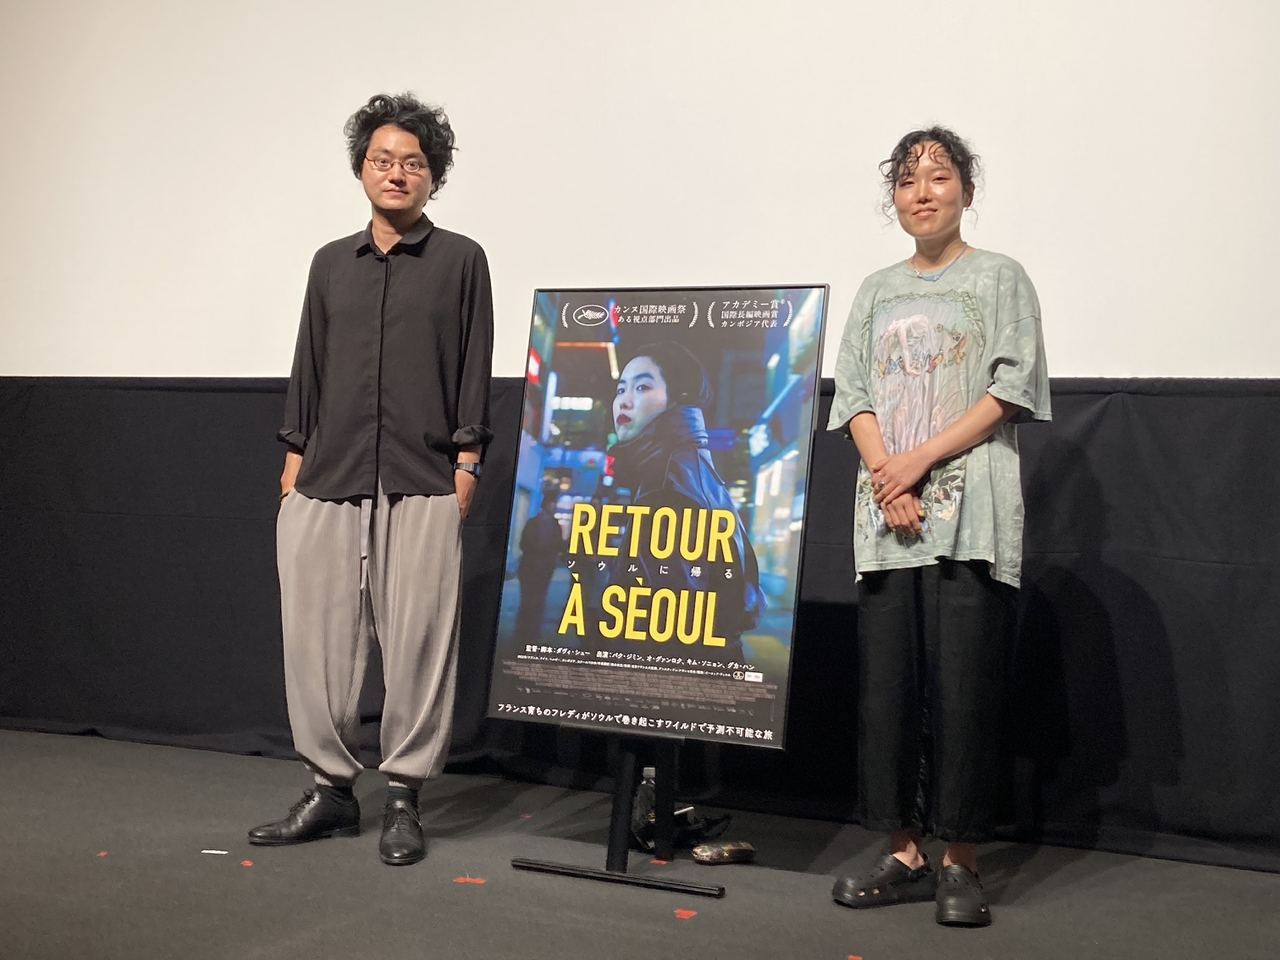 フランスに養子に出された韓国人女性が実の両親を探し、運命を切り開く成長物語　「ソウルに帰る」ダビ・シュー監督、パク・ジミンが来日